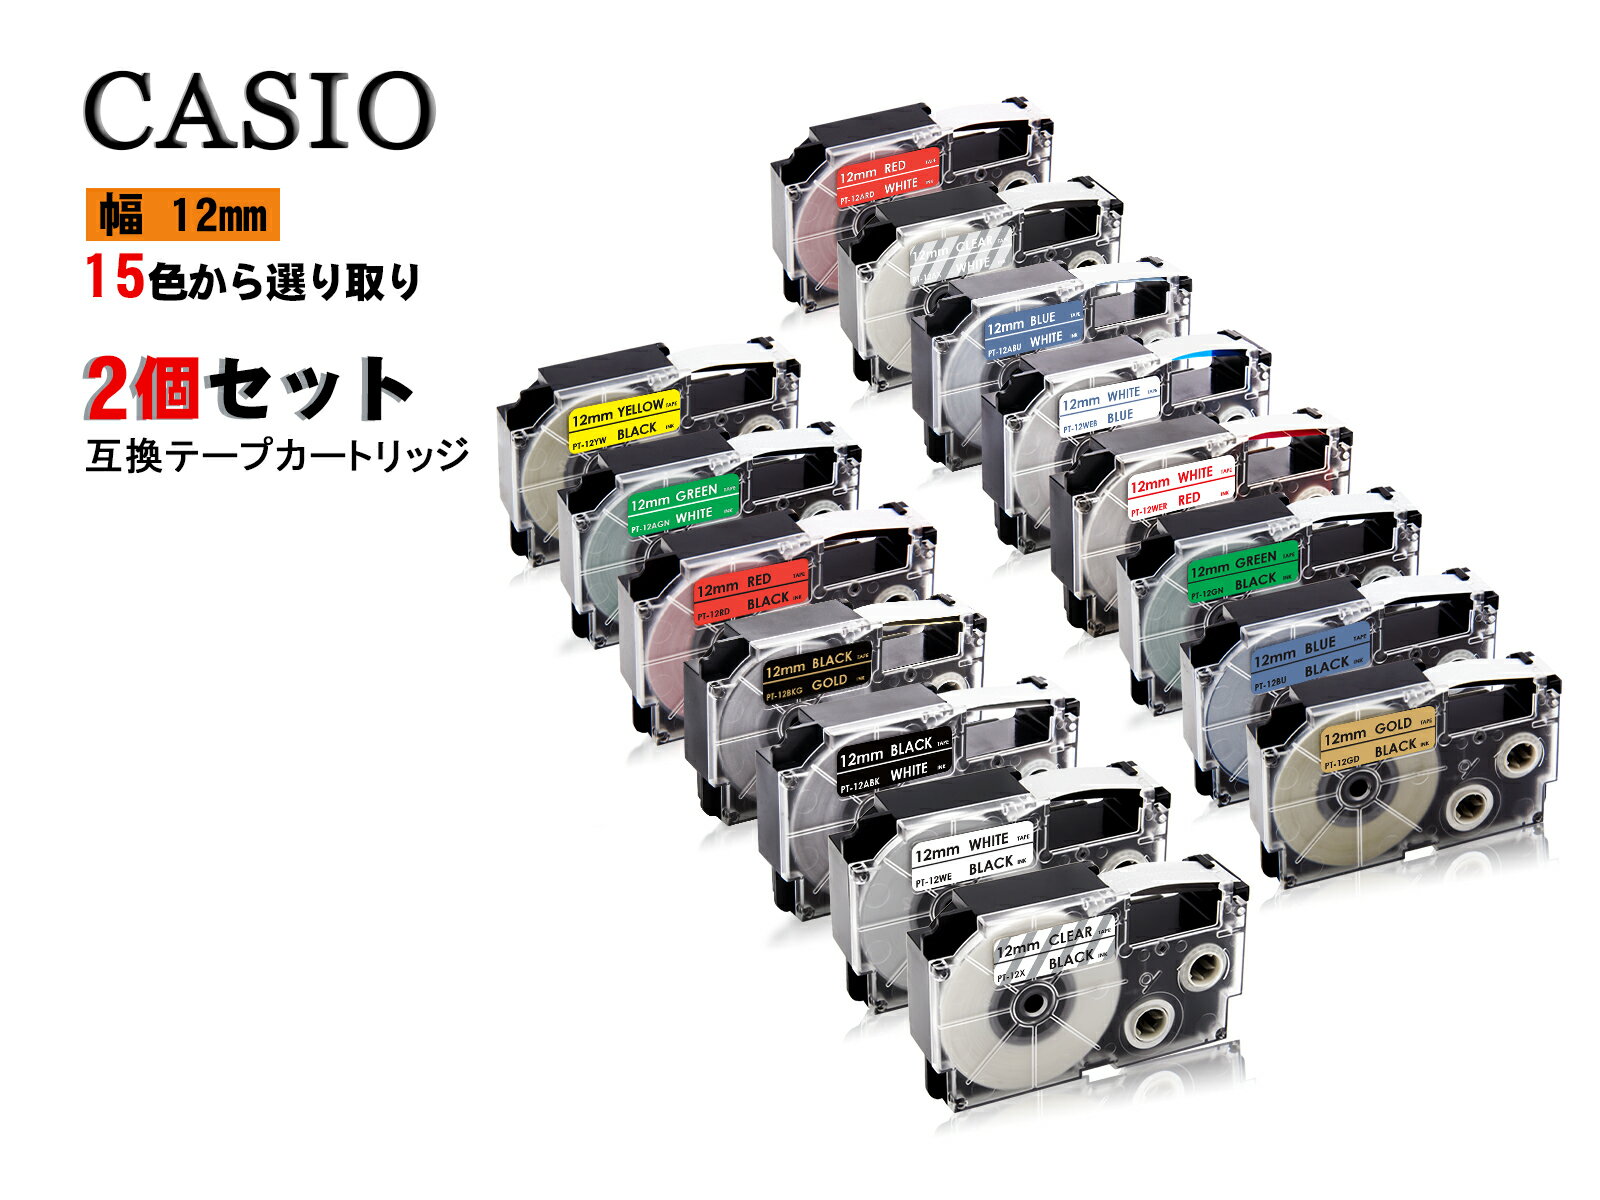 Casio casio カシオ ネームランド 互換